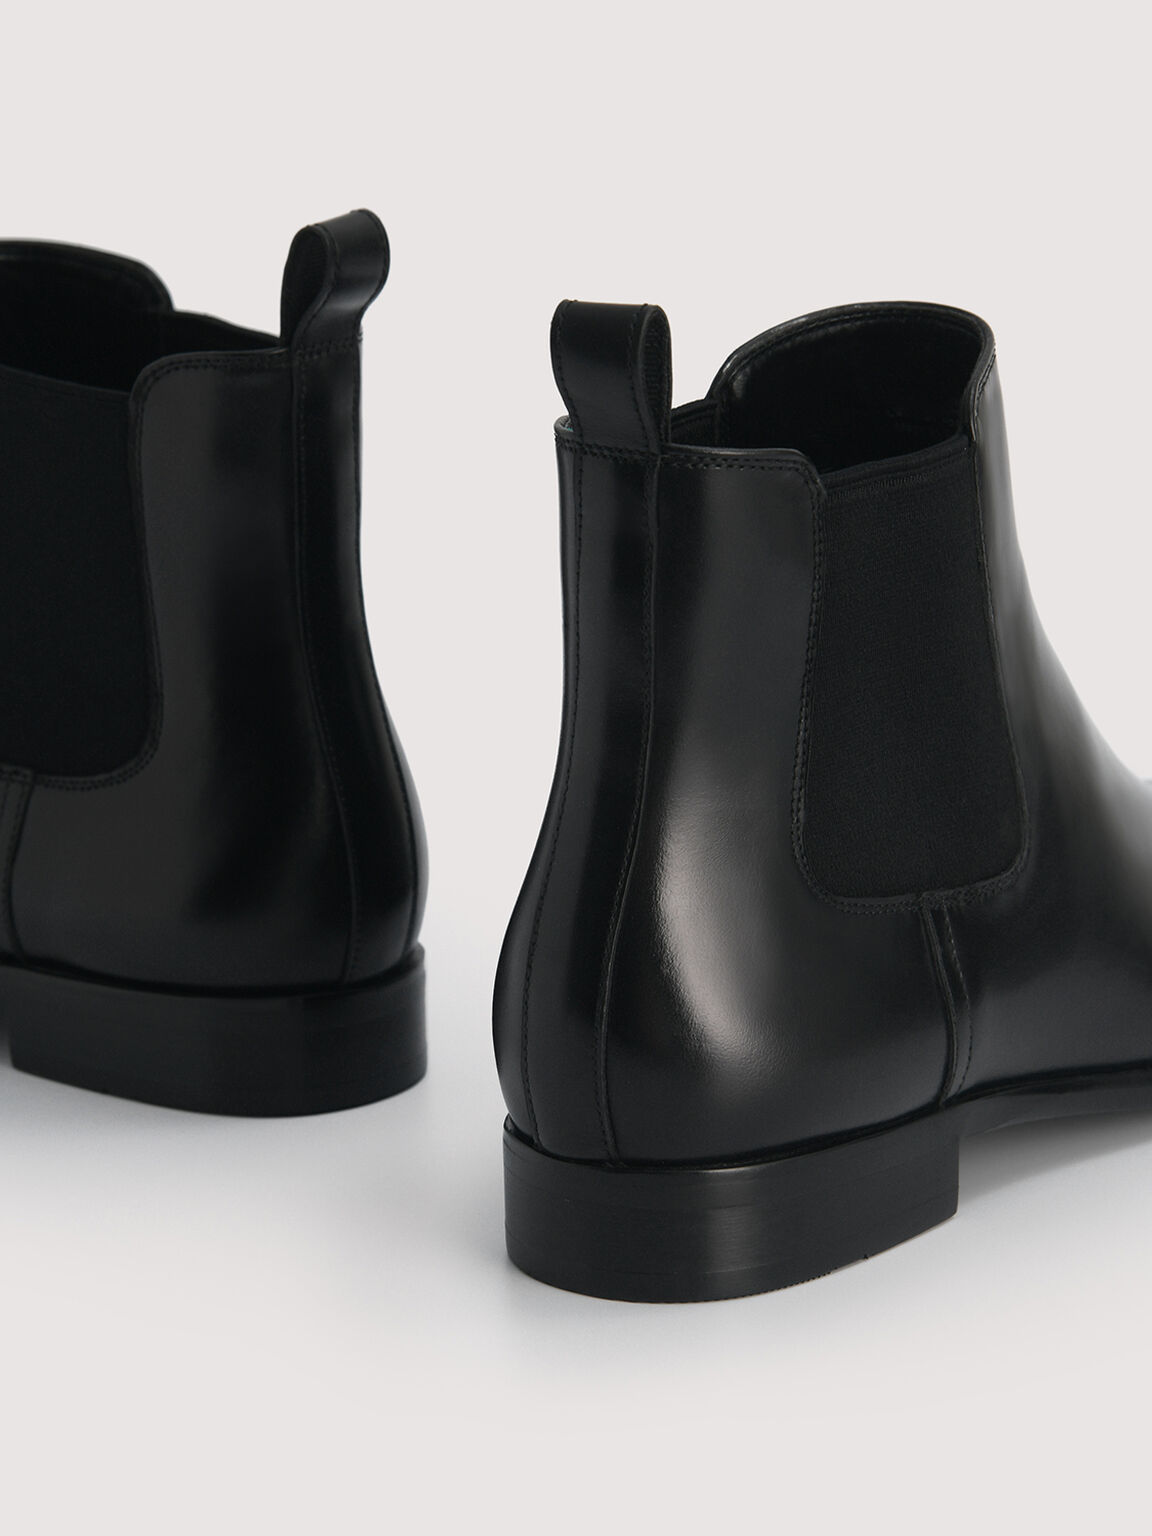 Meg Leather Chelsea Boots, Black